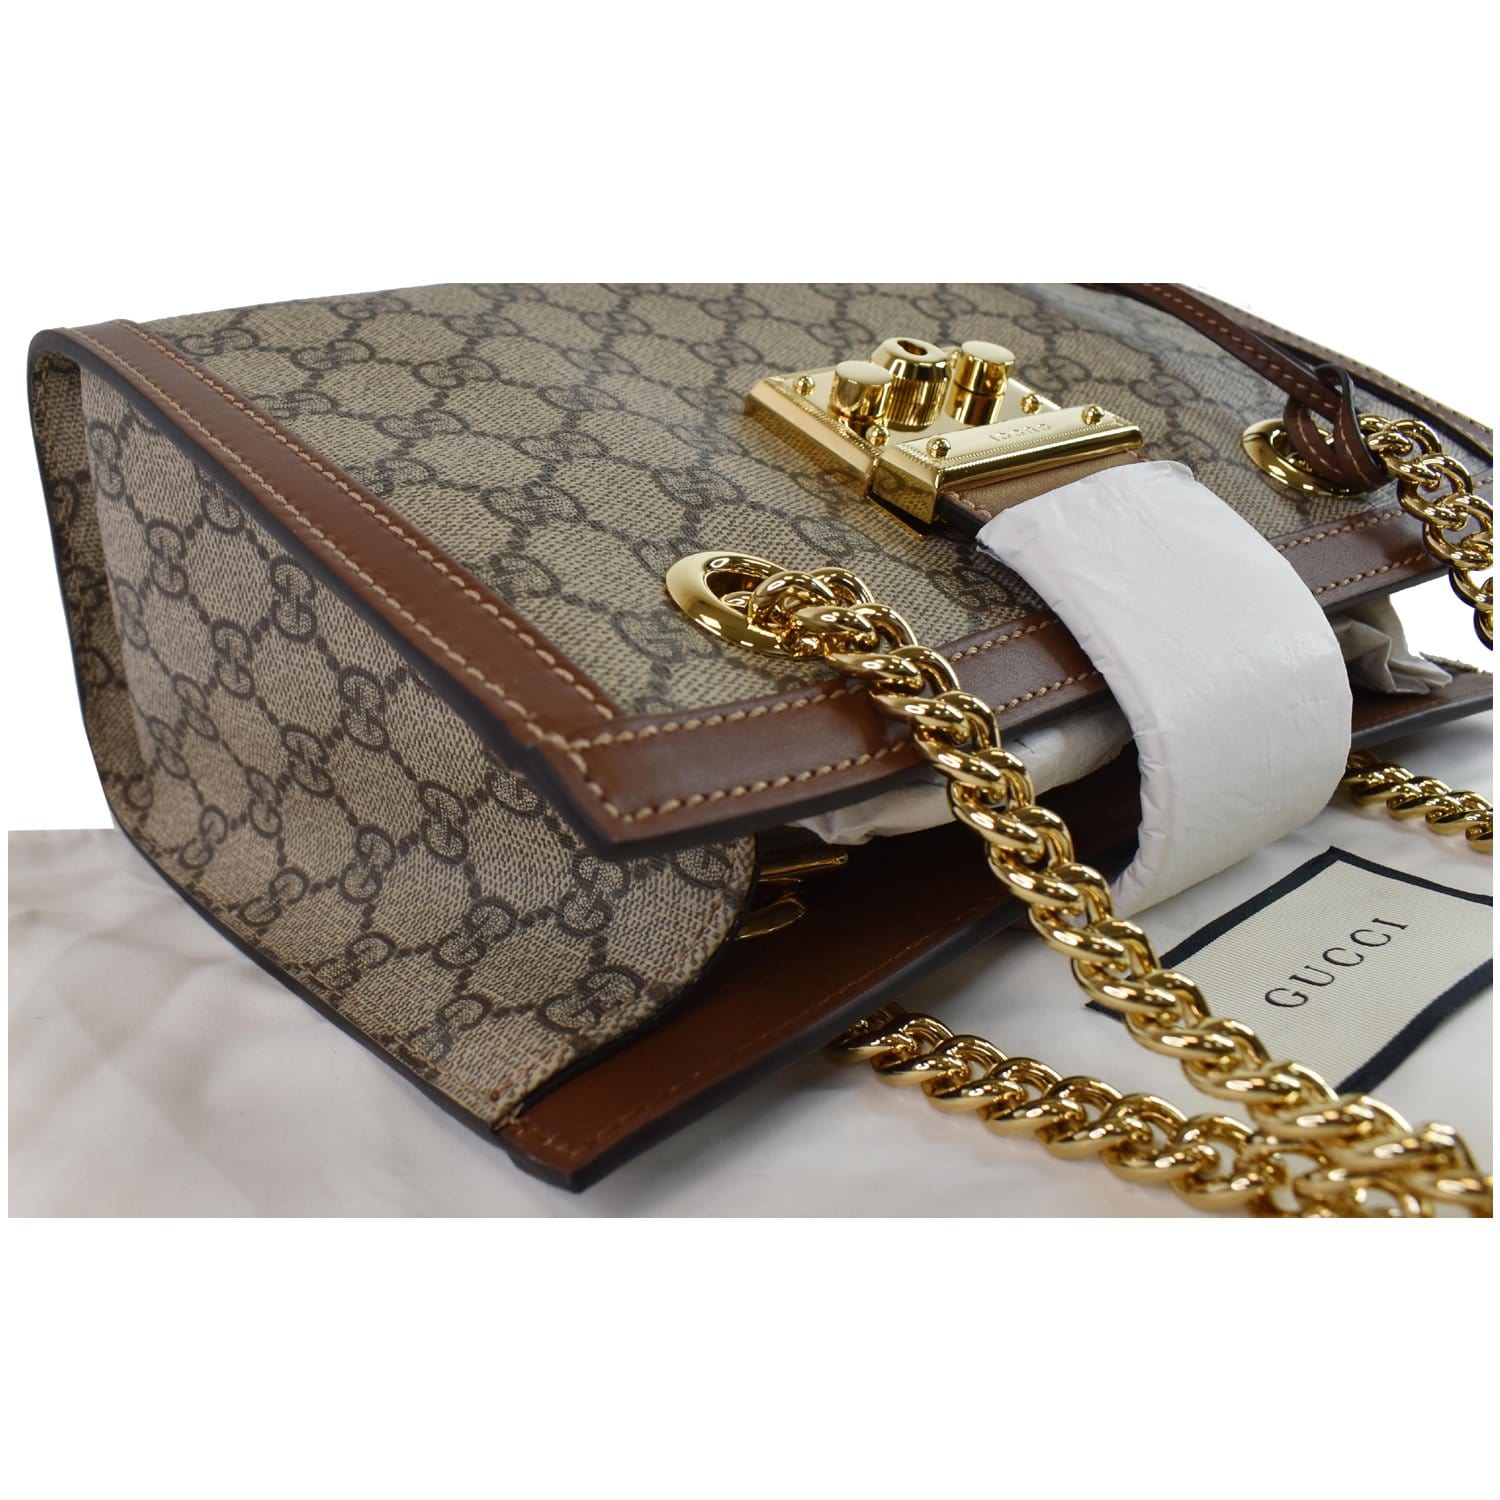 New Gucci - Padlock GG Small Shoulder Bag